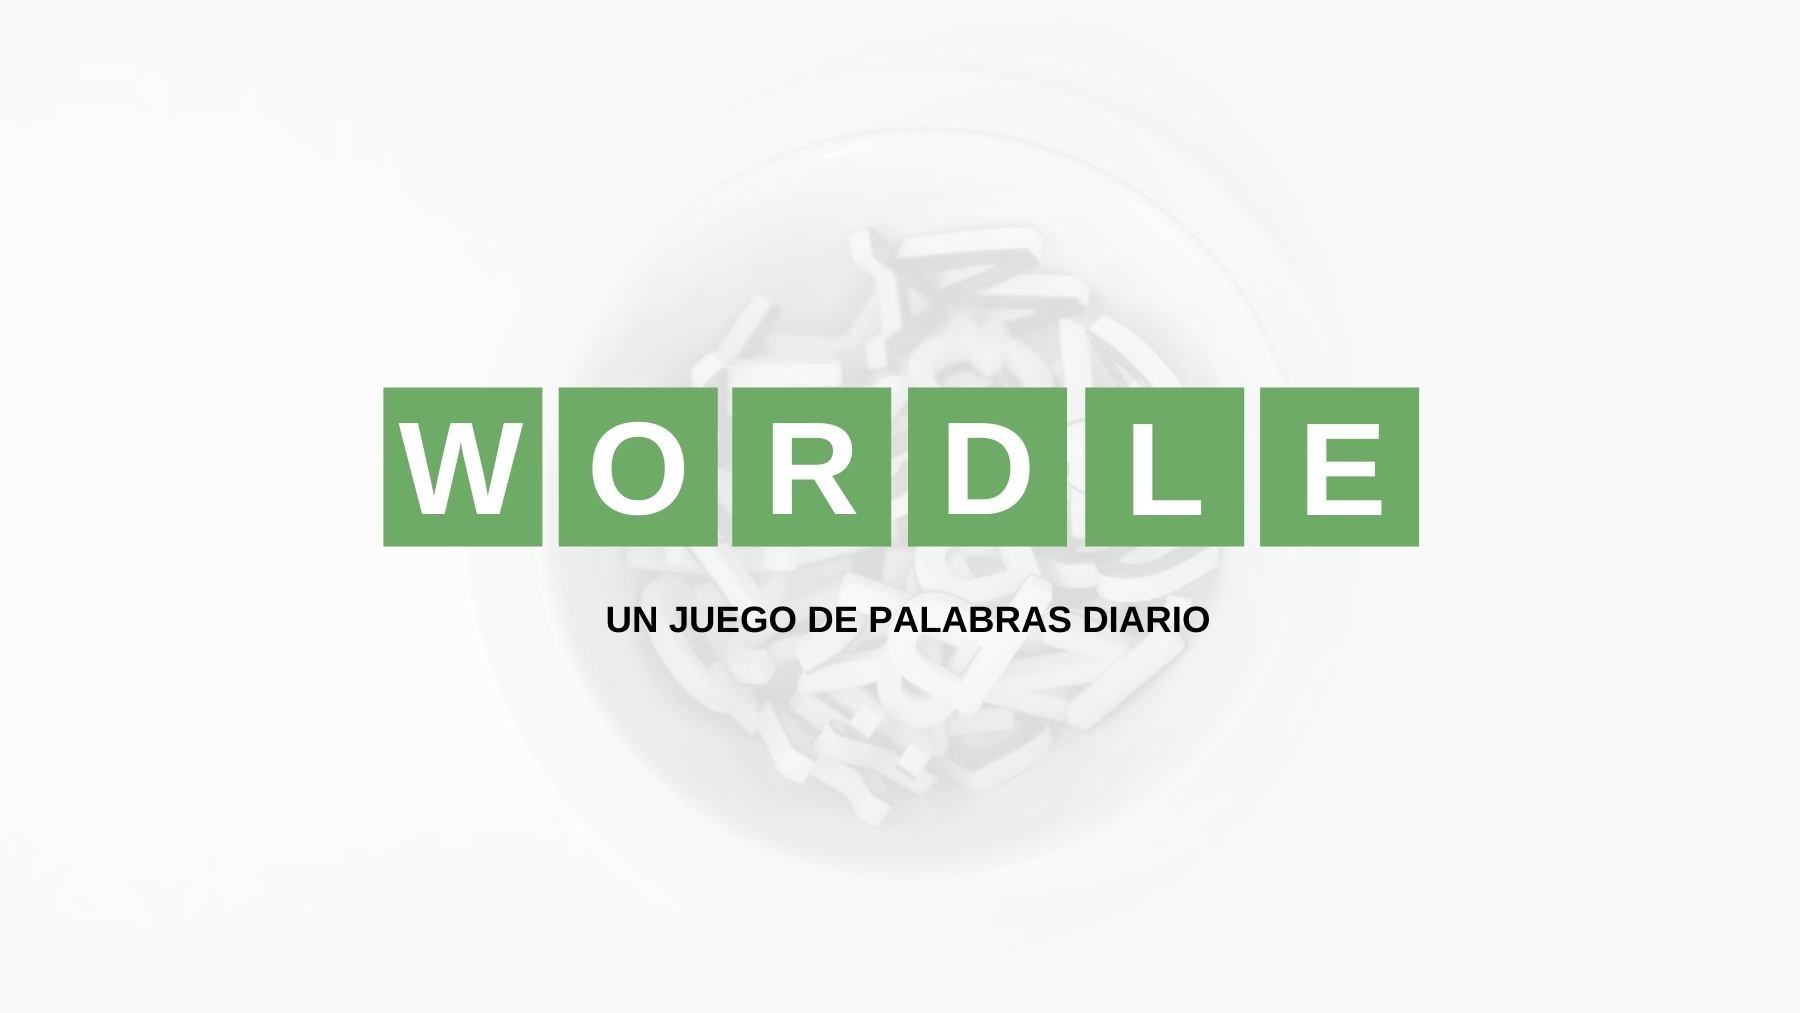 Solución y pistas palabra Wordle español, científico y con tildes hoy, jueves 8 de septiembre de 2022